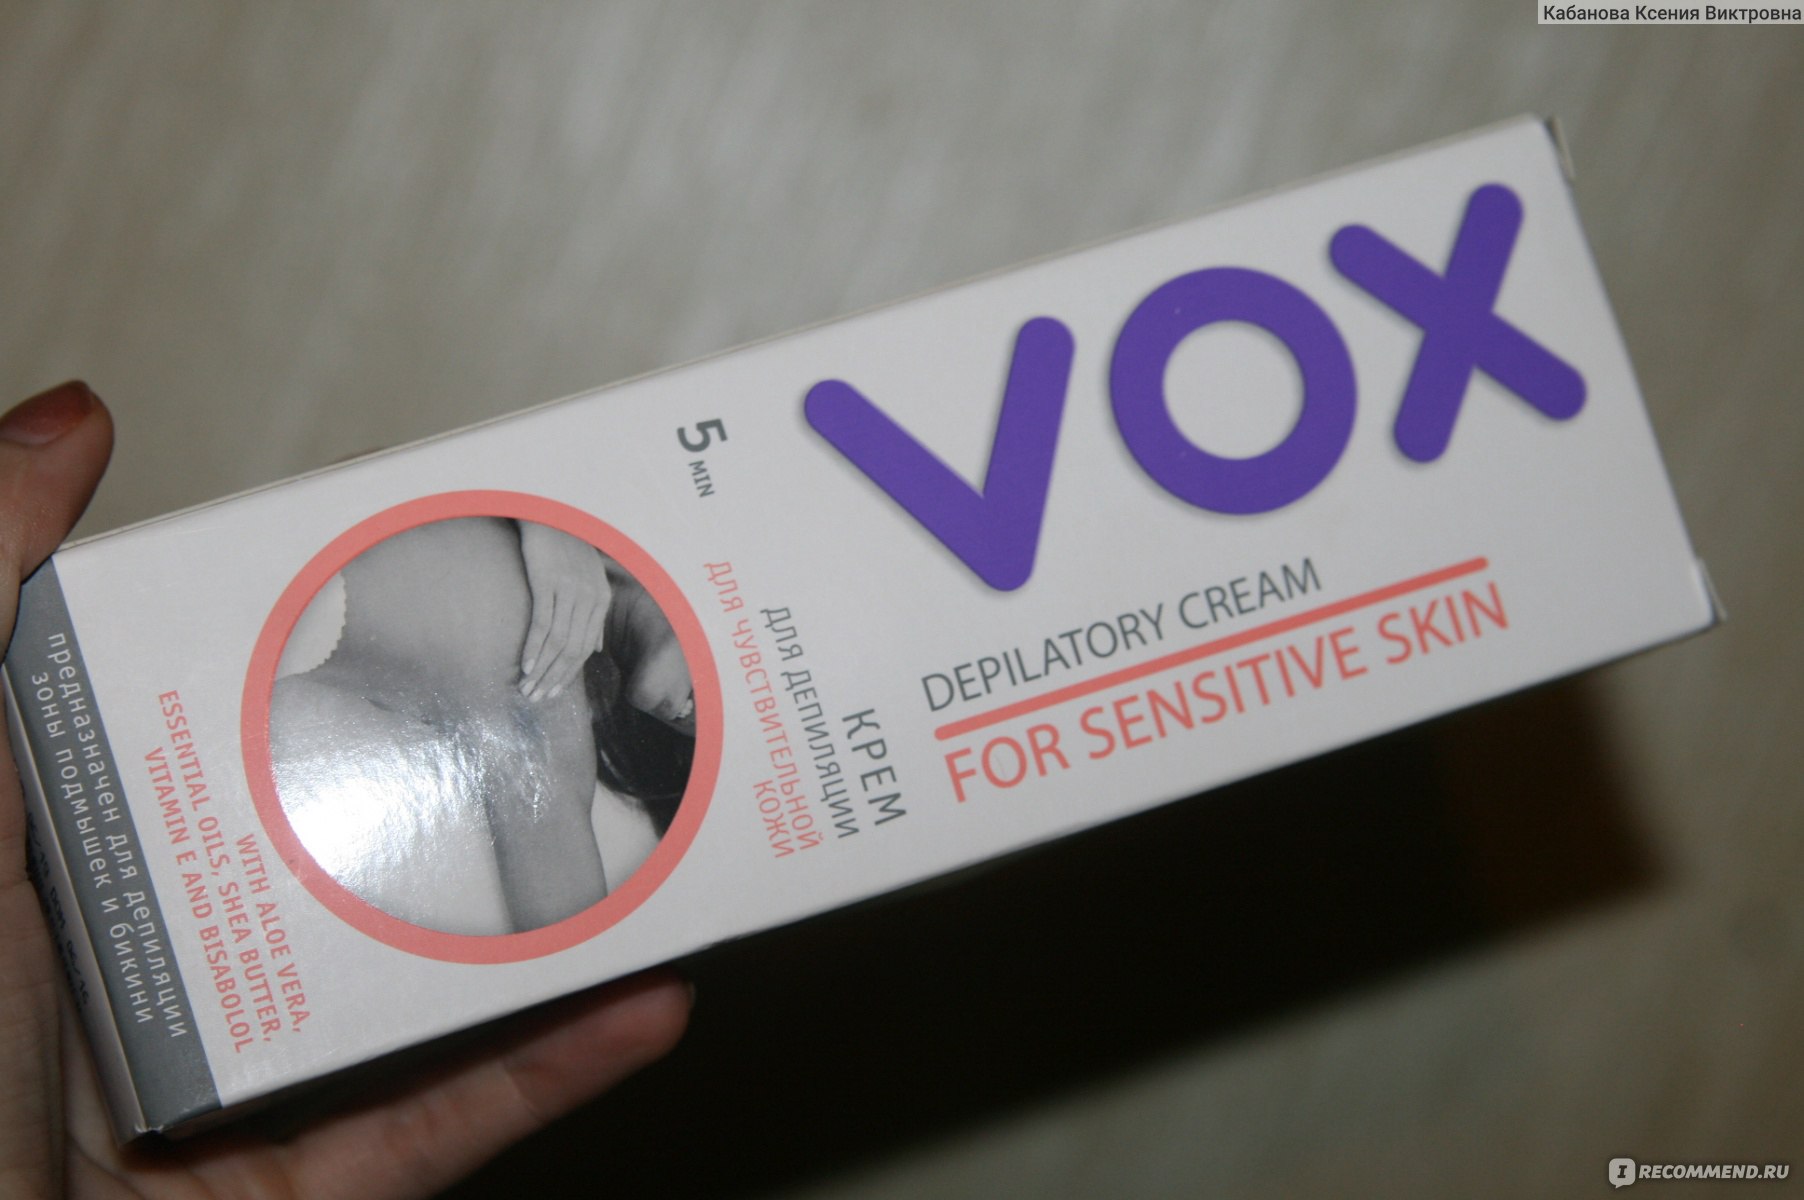 Крем для депиляции vox на лице